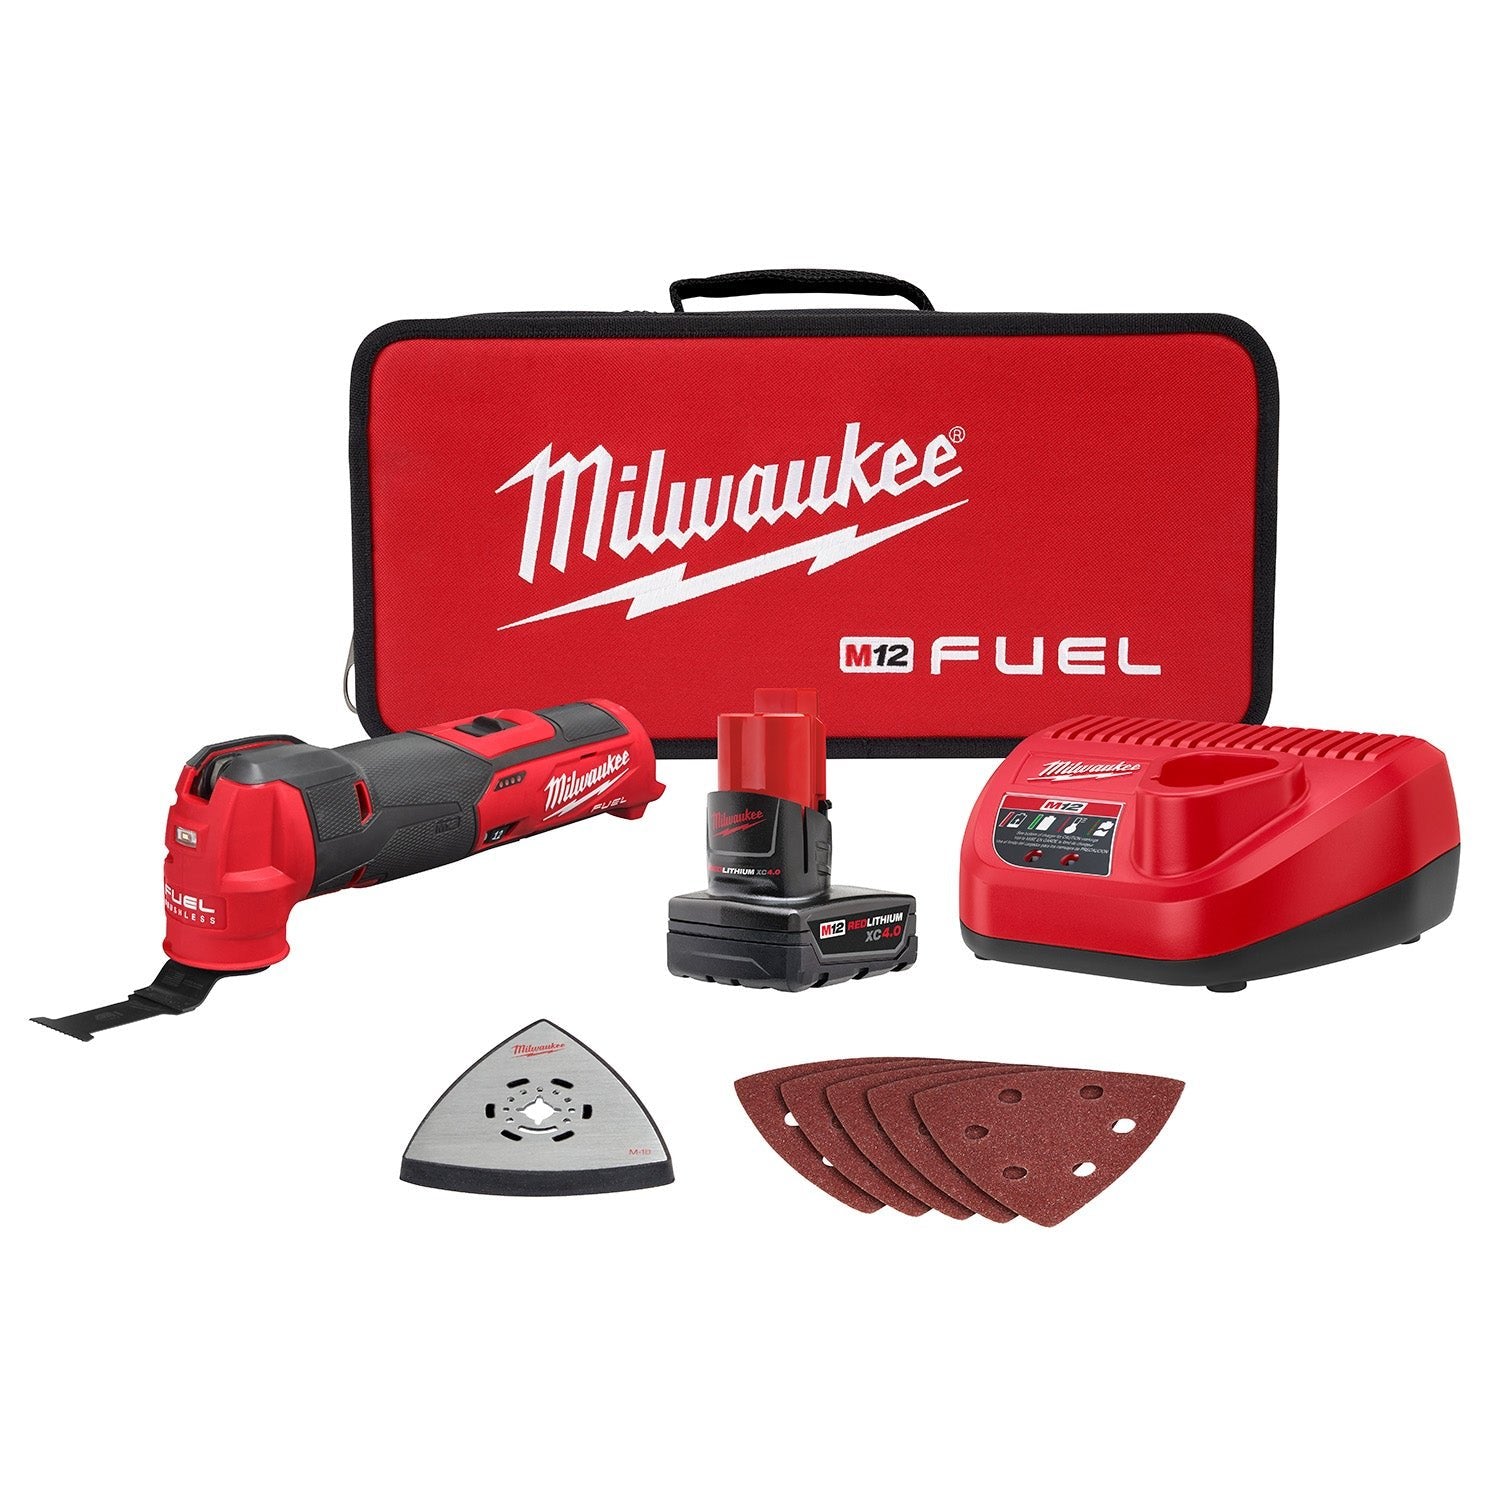 Milwaukee 2526-21XC  -  M12 Fuel Oscillating Multi-Tool - KIT